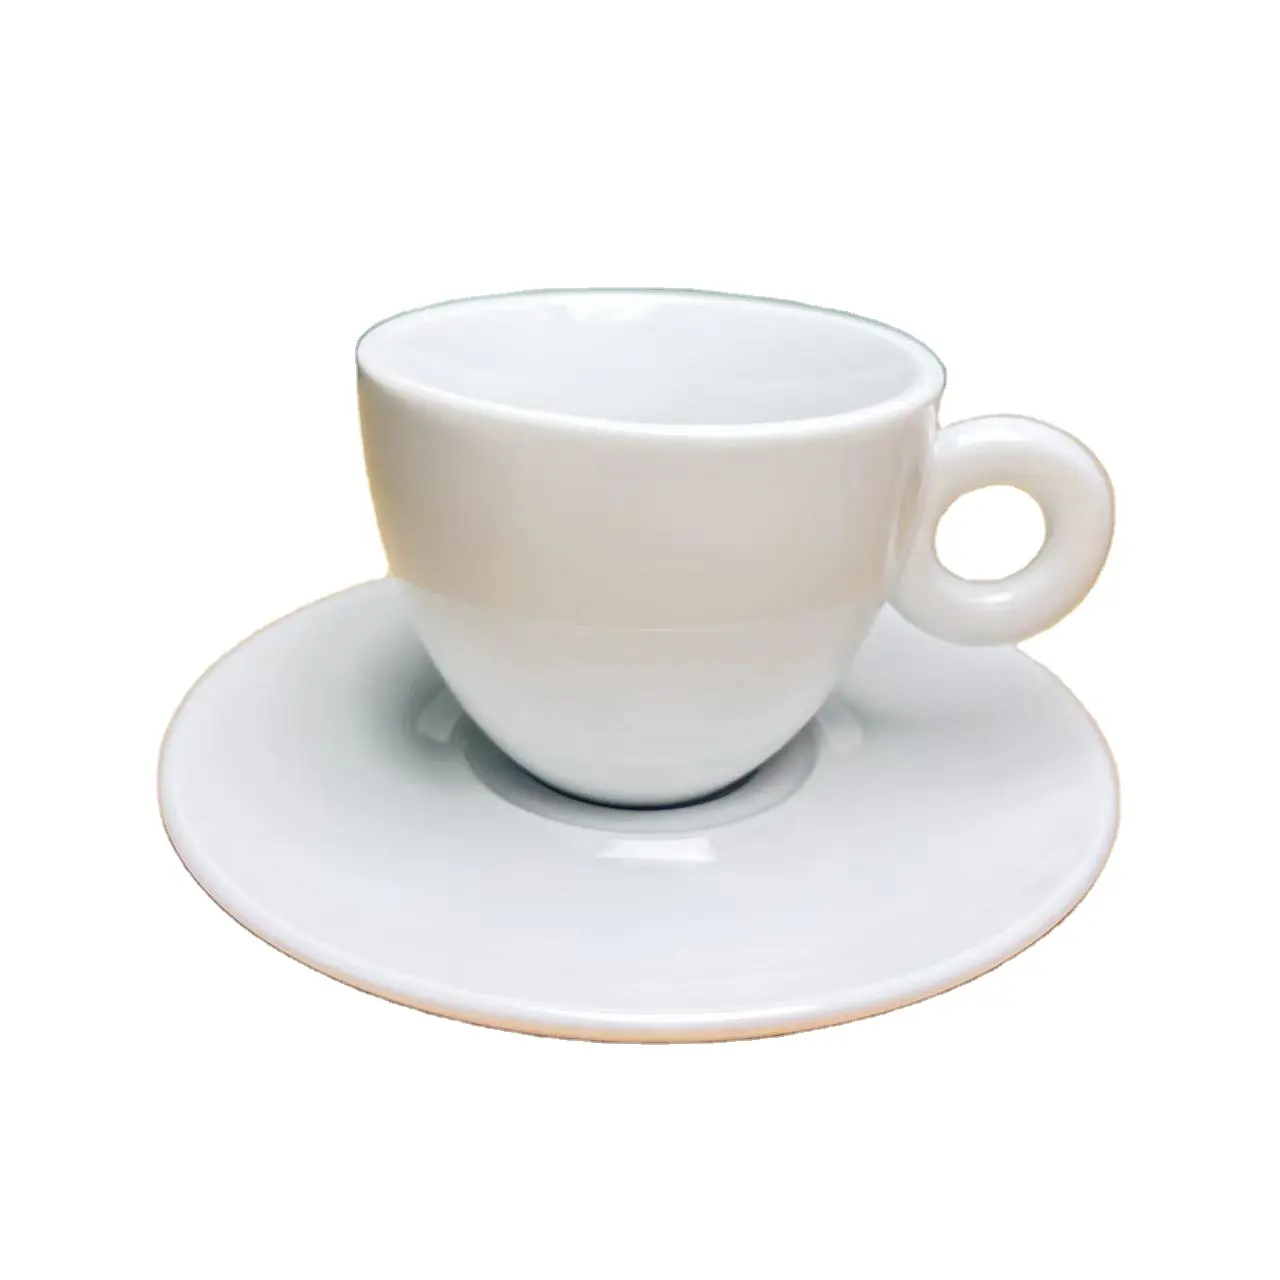 옵션 색상의 커피 머신 용 세라믹 에스프레소 컵 및 접시